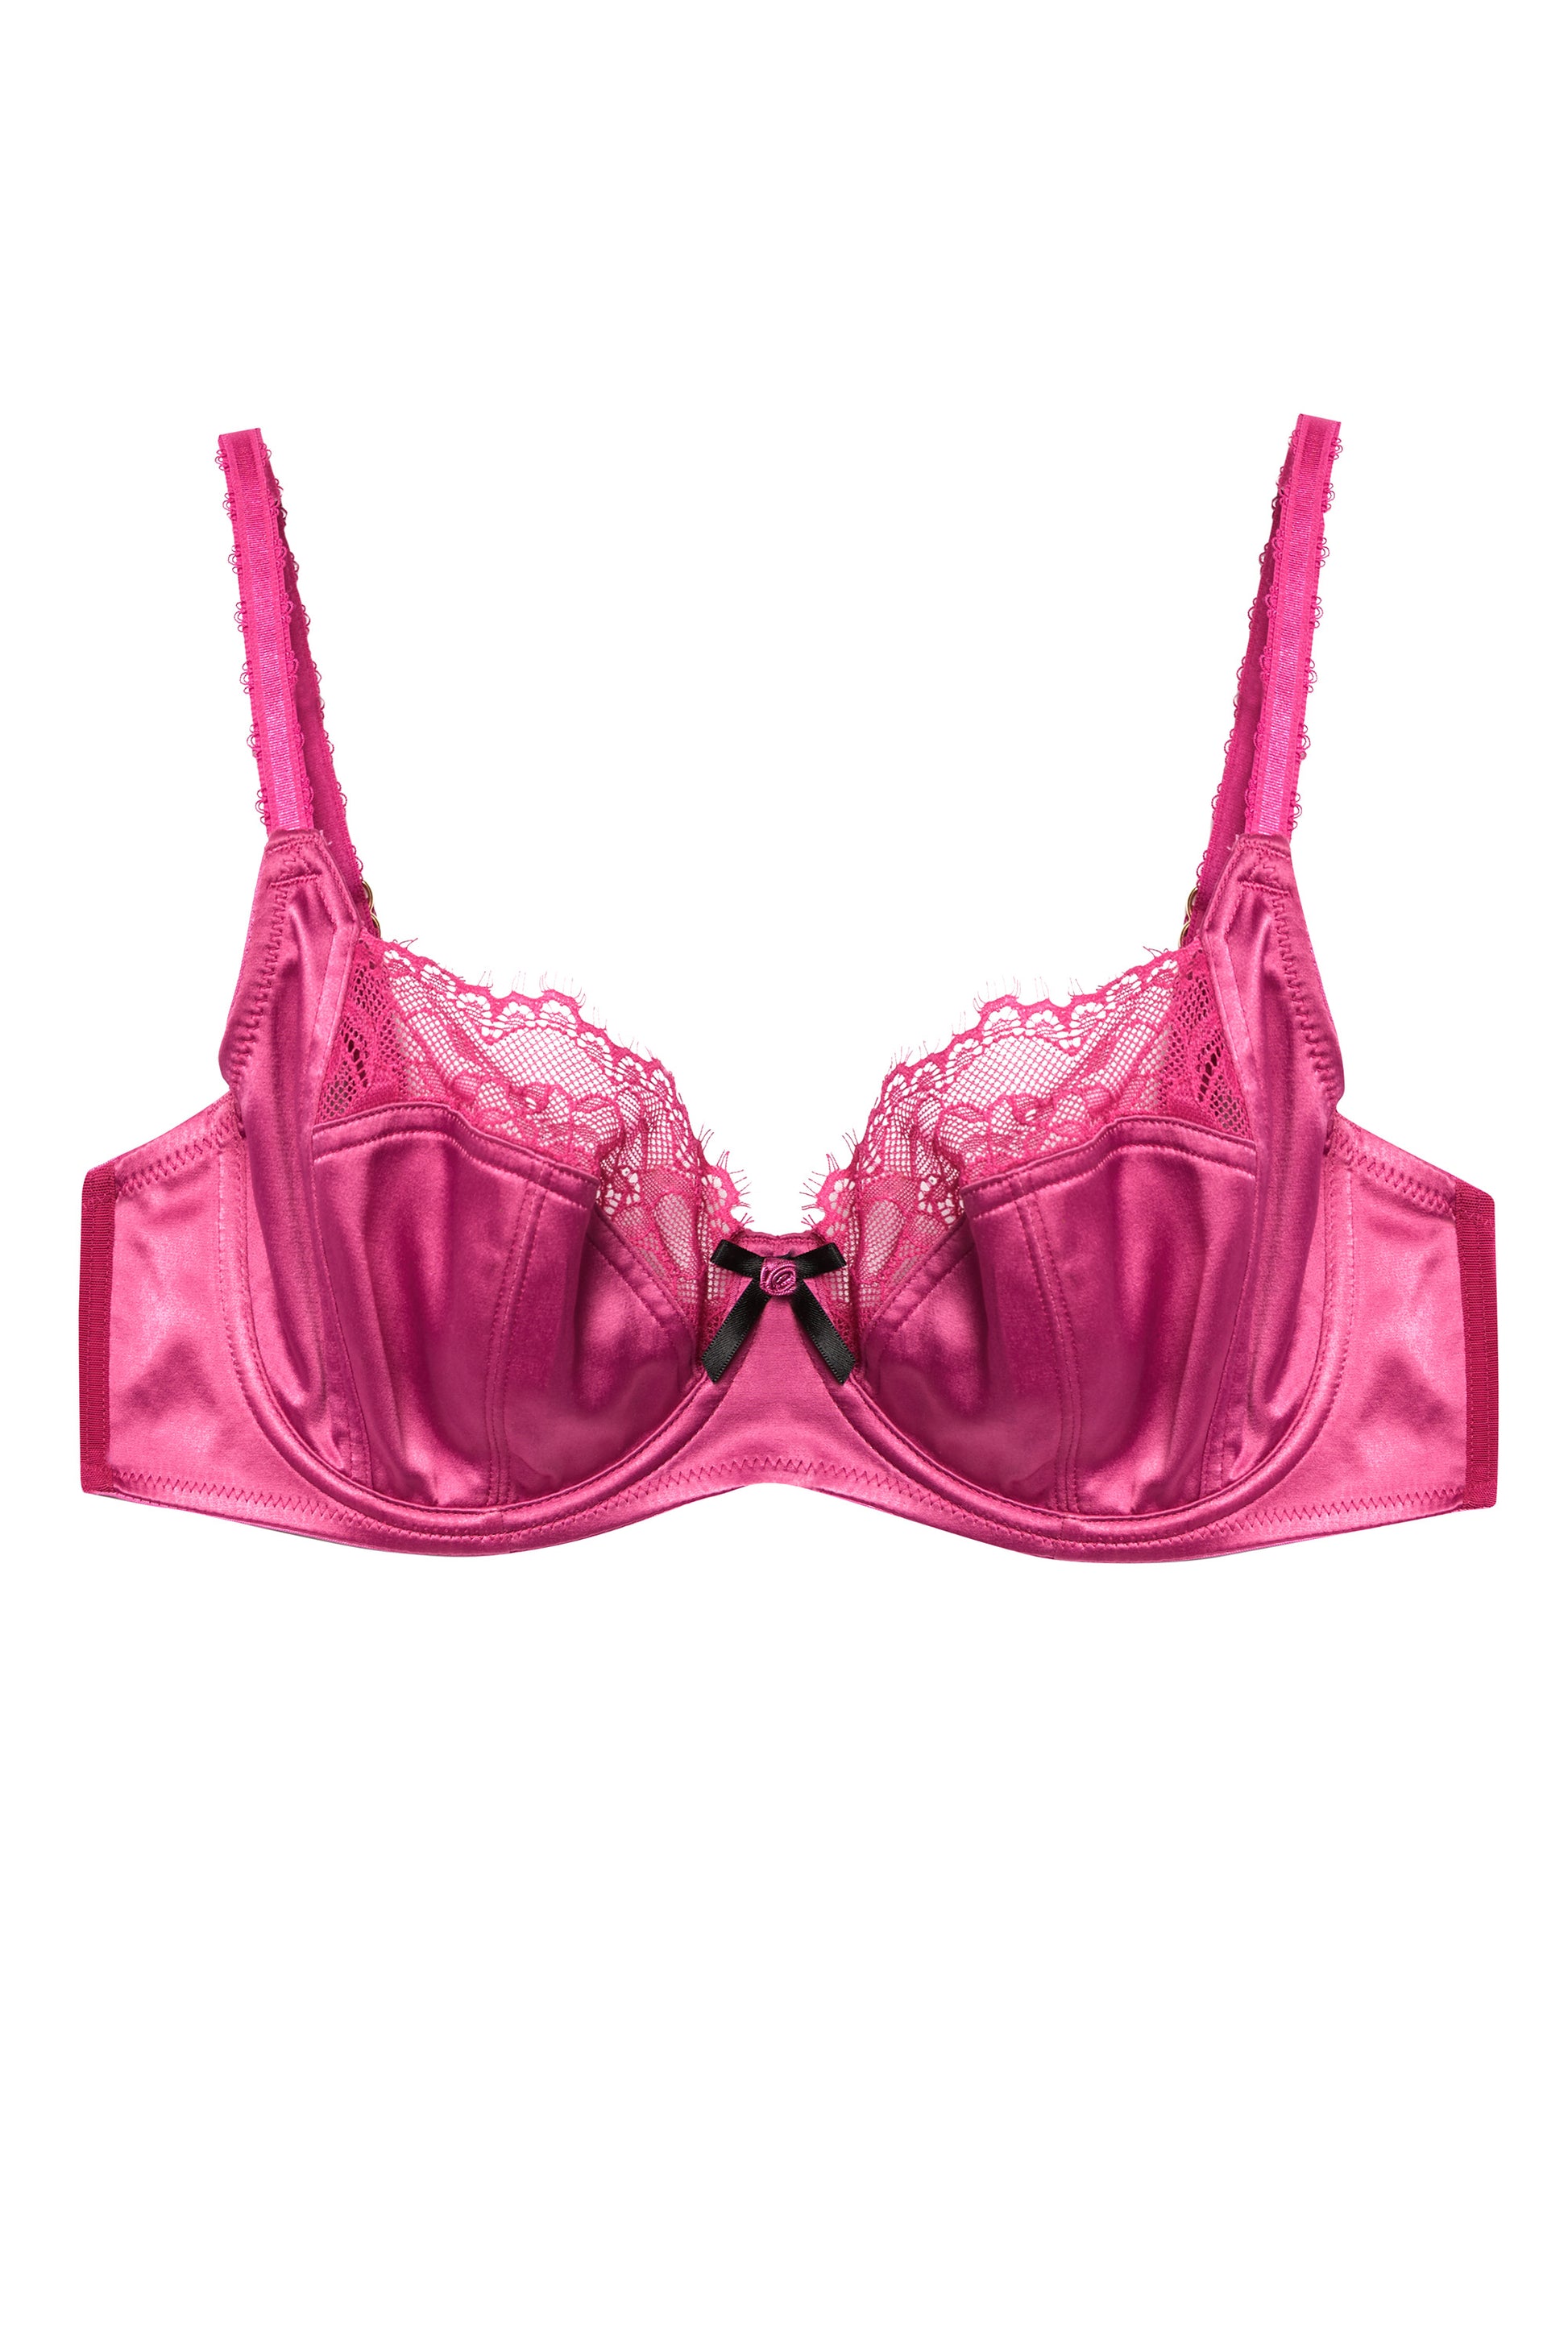 Lilyette Pale Pink Underwire Bra 40DD Style #0434